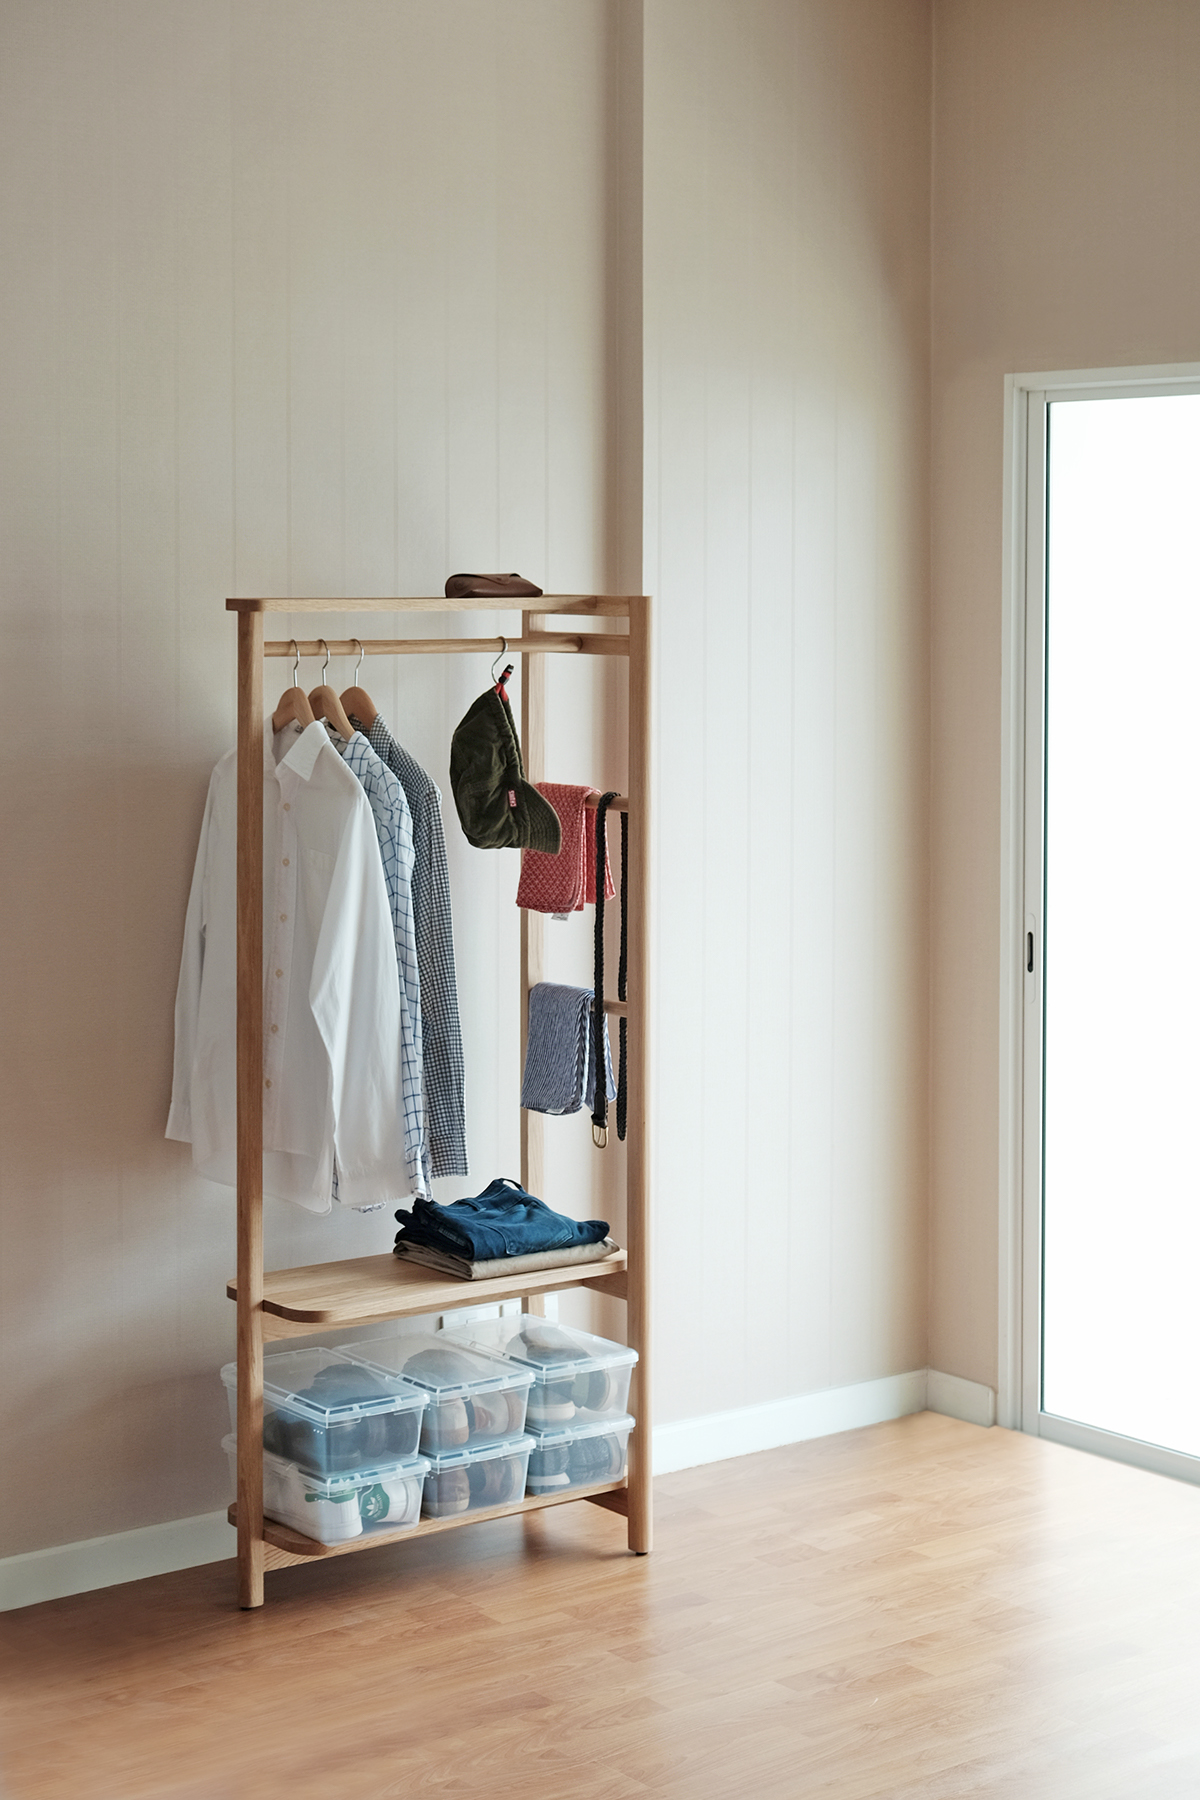 KILTT Clothe stand hanger rack wood simple minimal